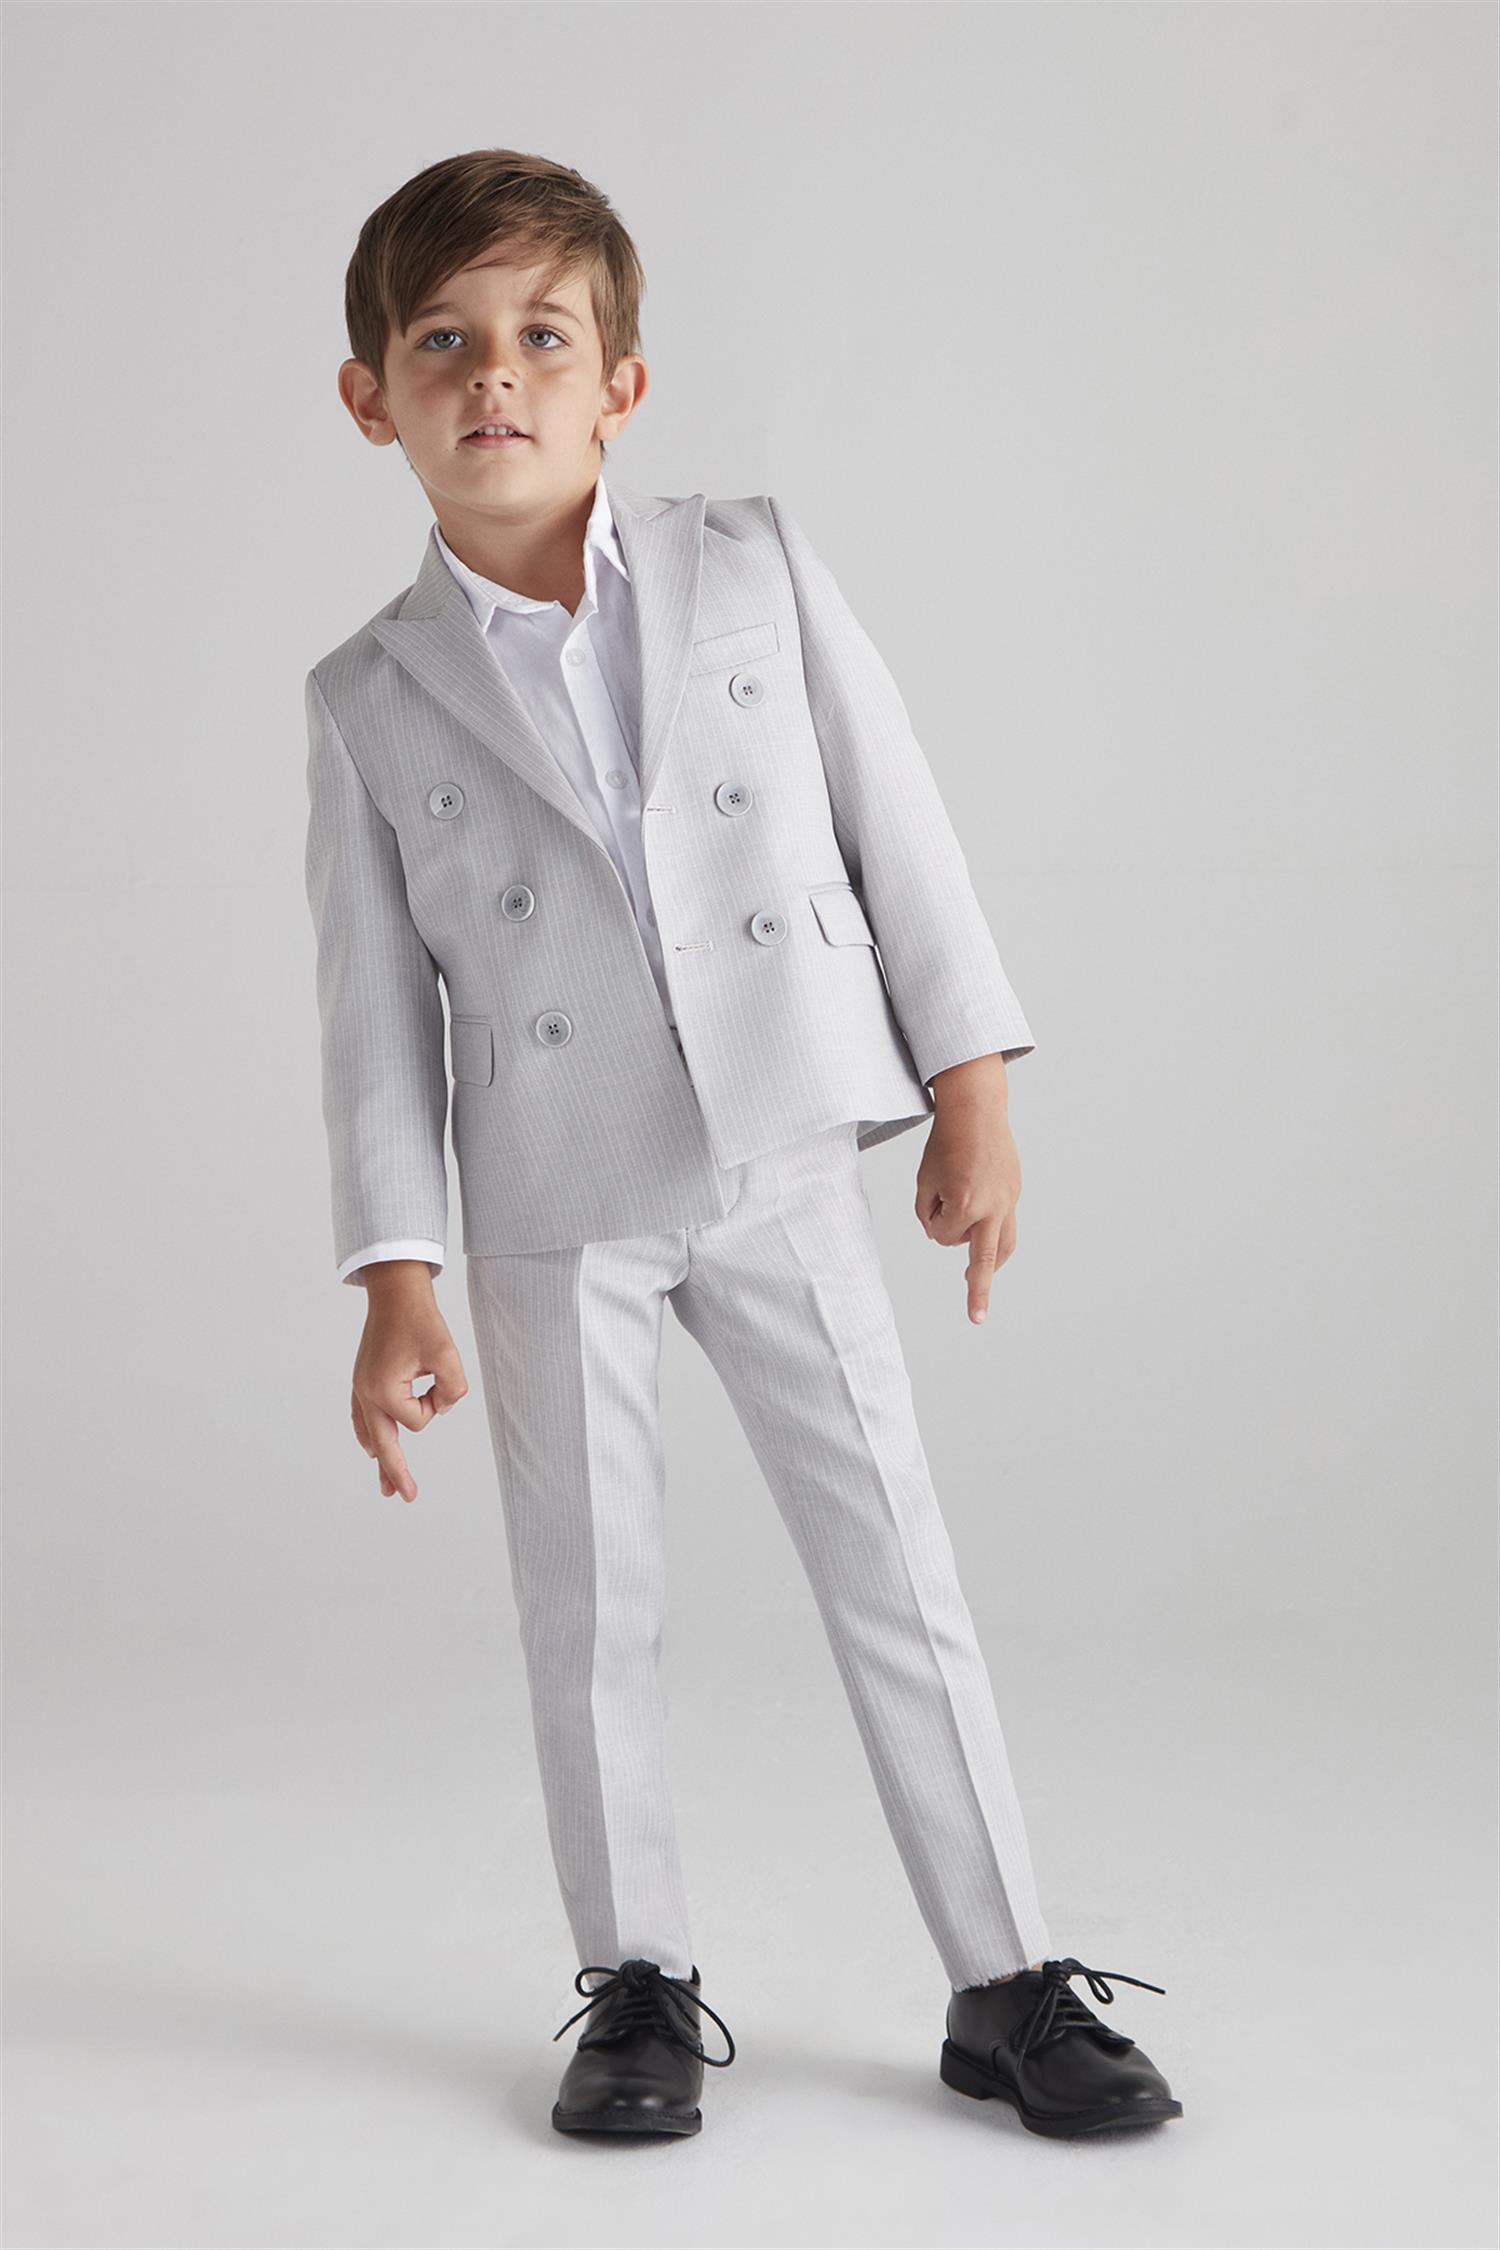 hoQuspoQus Erkek Çocuk Kruvaze Çizgili Takım Elbise (Gri) - Üçlü Takım  (Pantolon,Gömlek,Ceket)